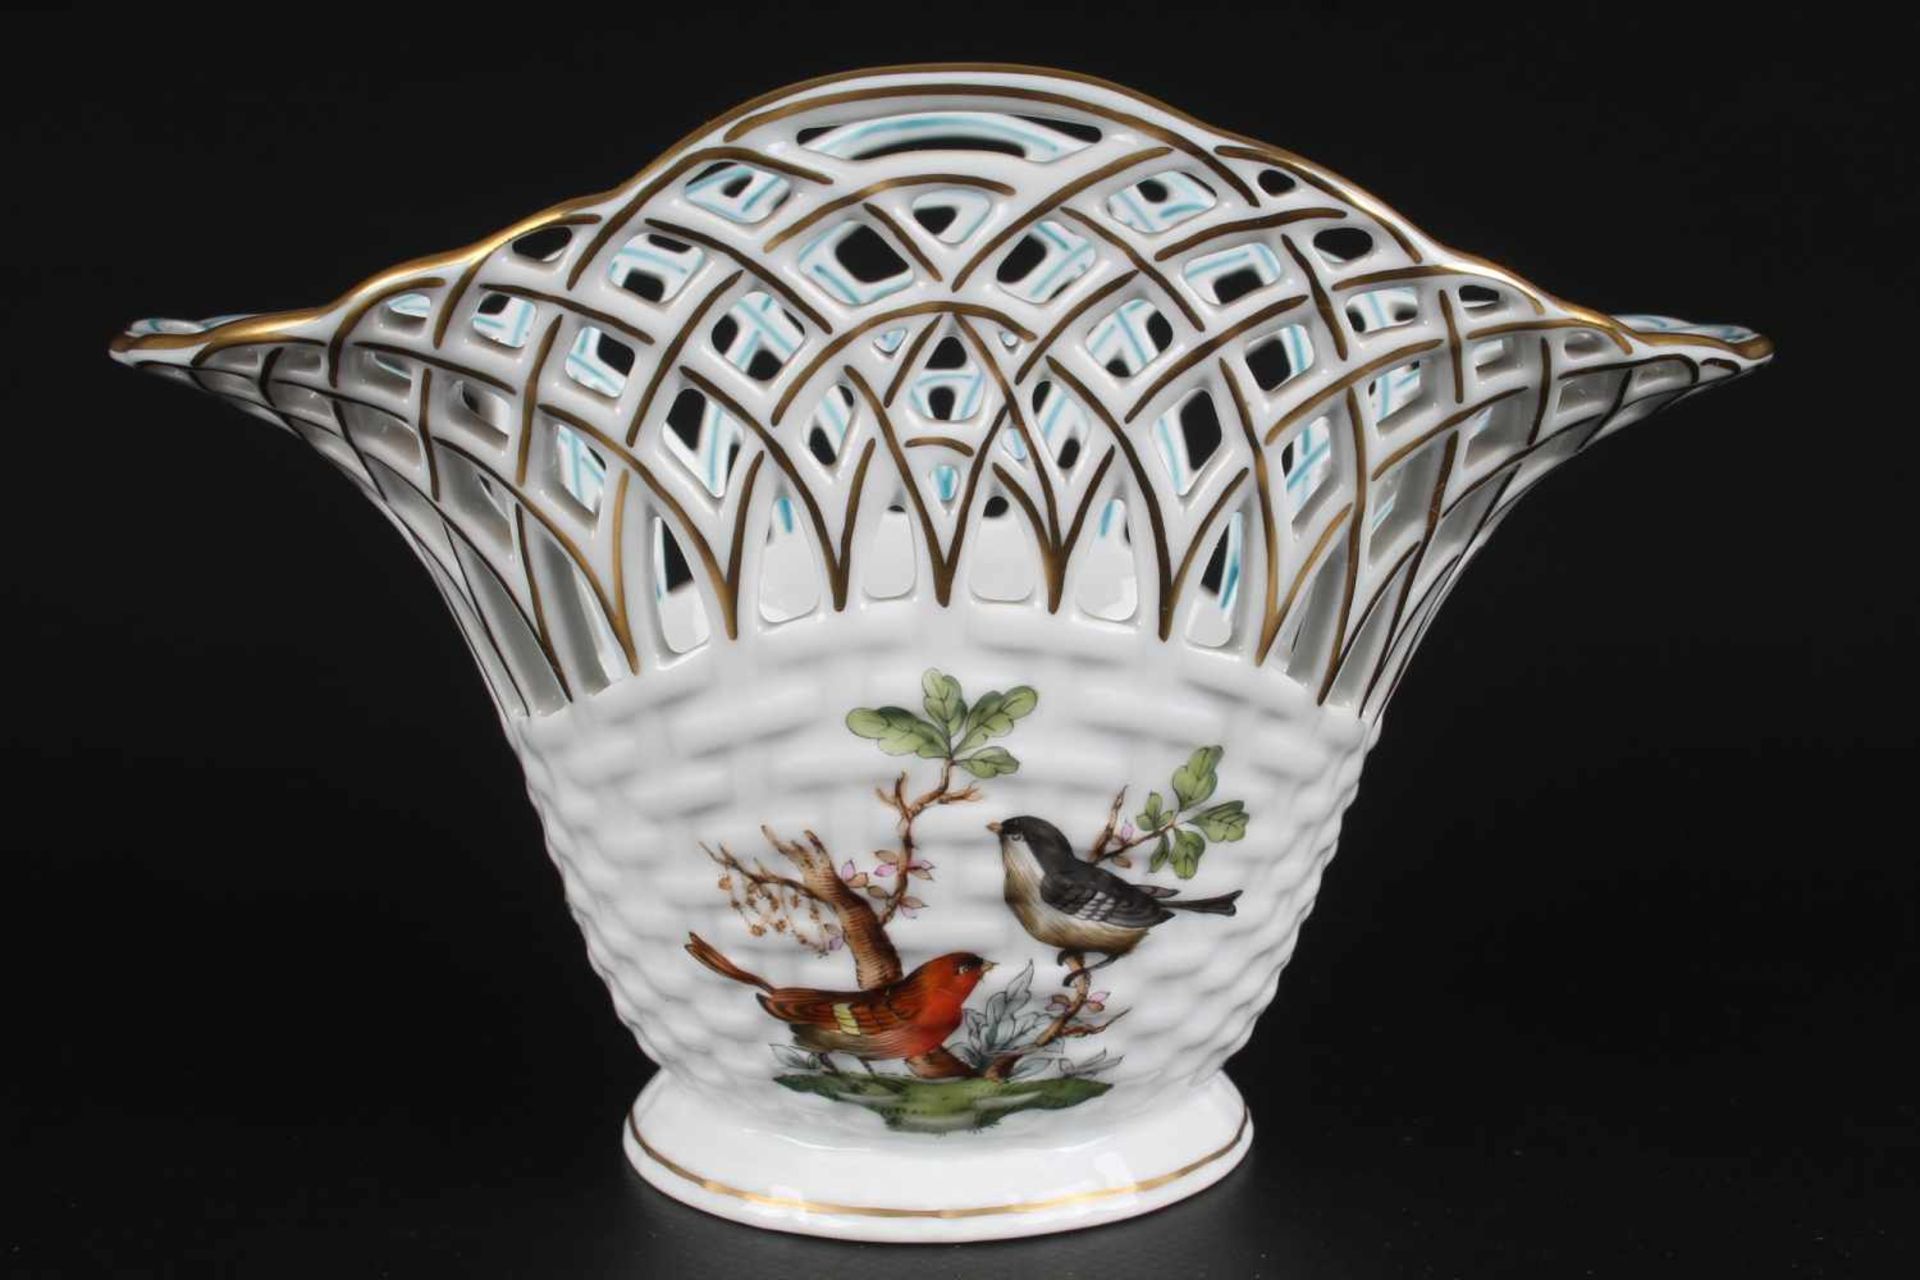 Herend Rothschild Schale bowl,Porzellan, Ungarn 20. Jahrhundert, Dekor Rothschild, Durchbrucharbeit, - Bild 2 aus 5